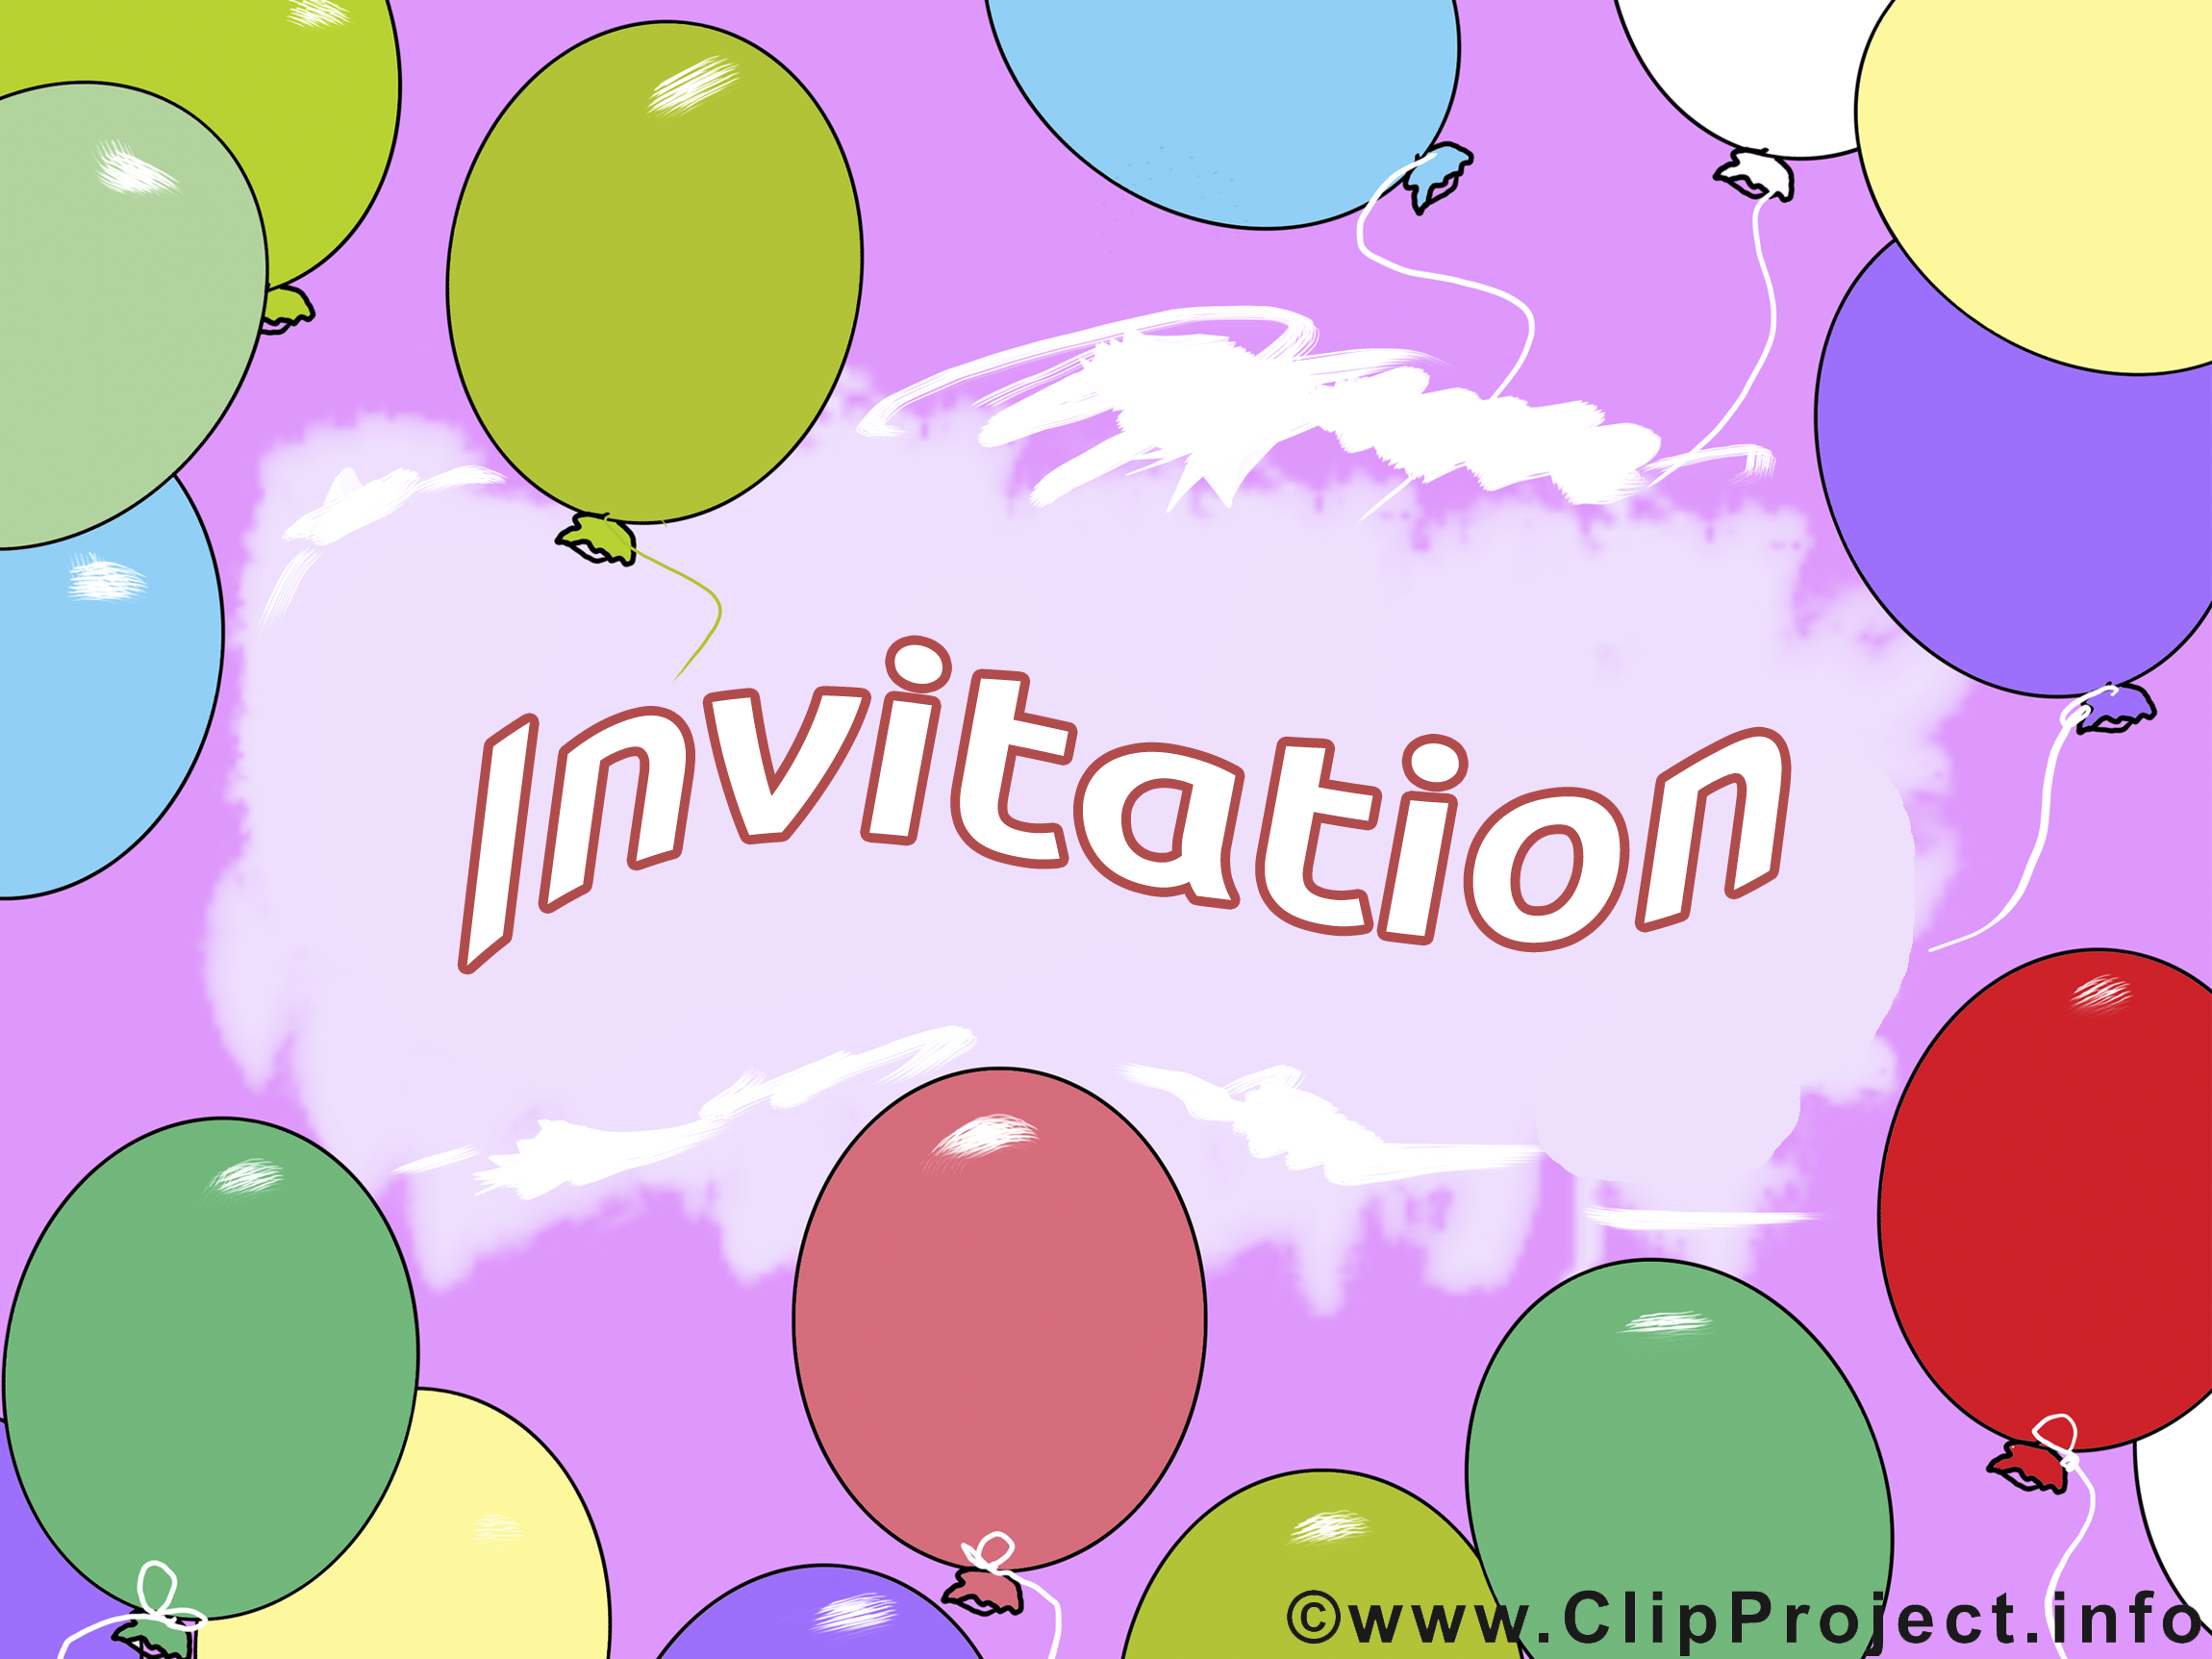 Ballons clipart gratuit - Invitation images